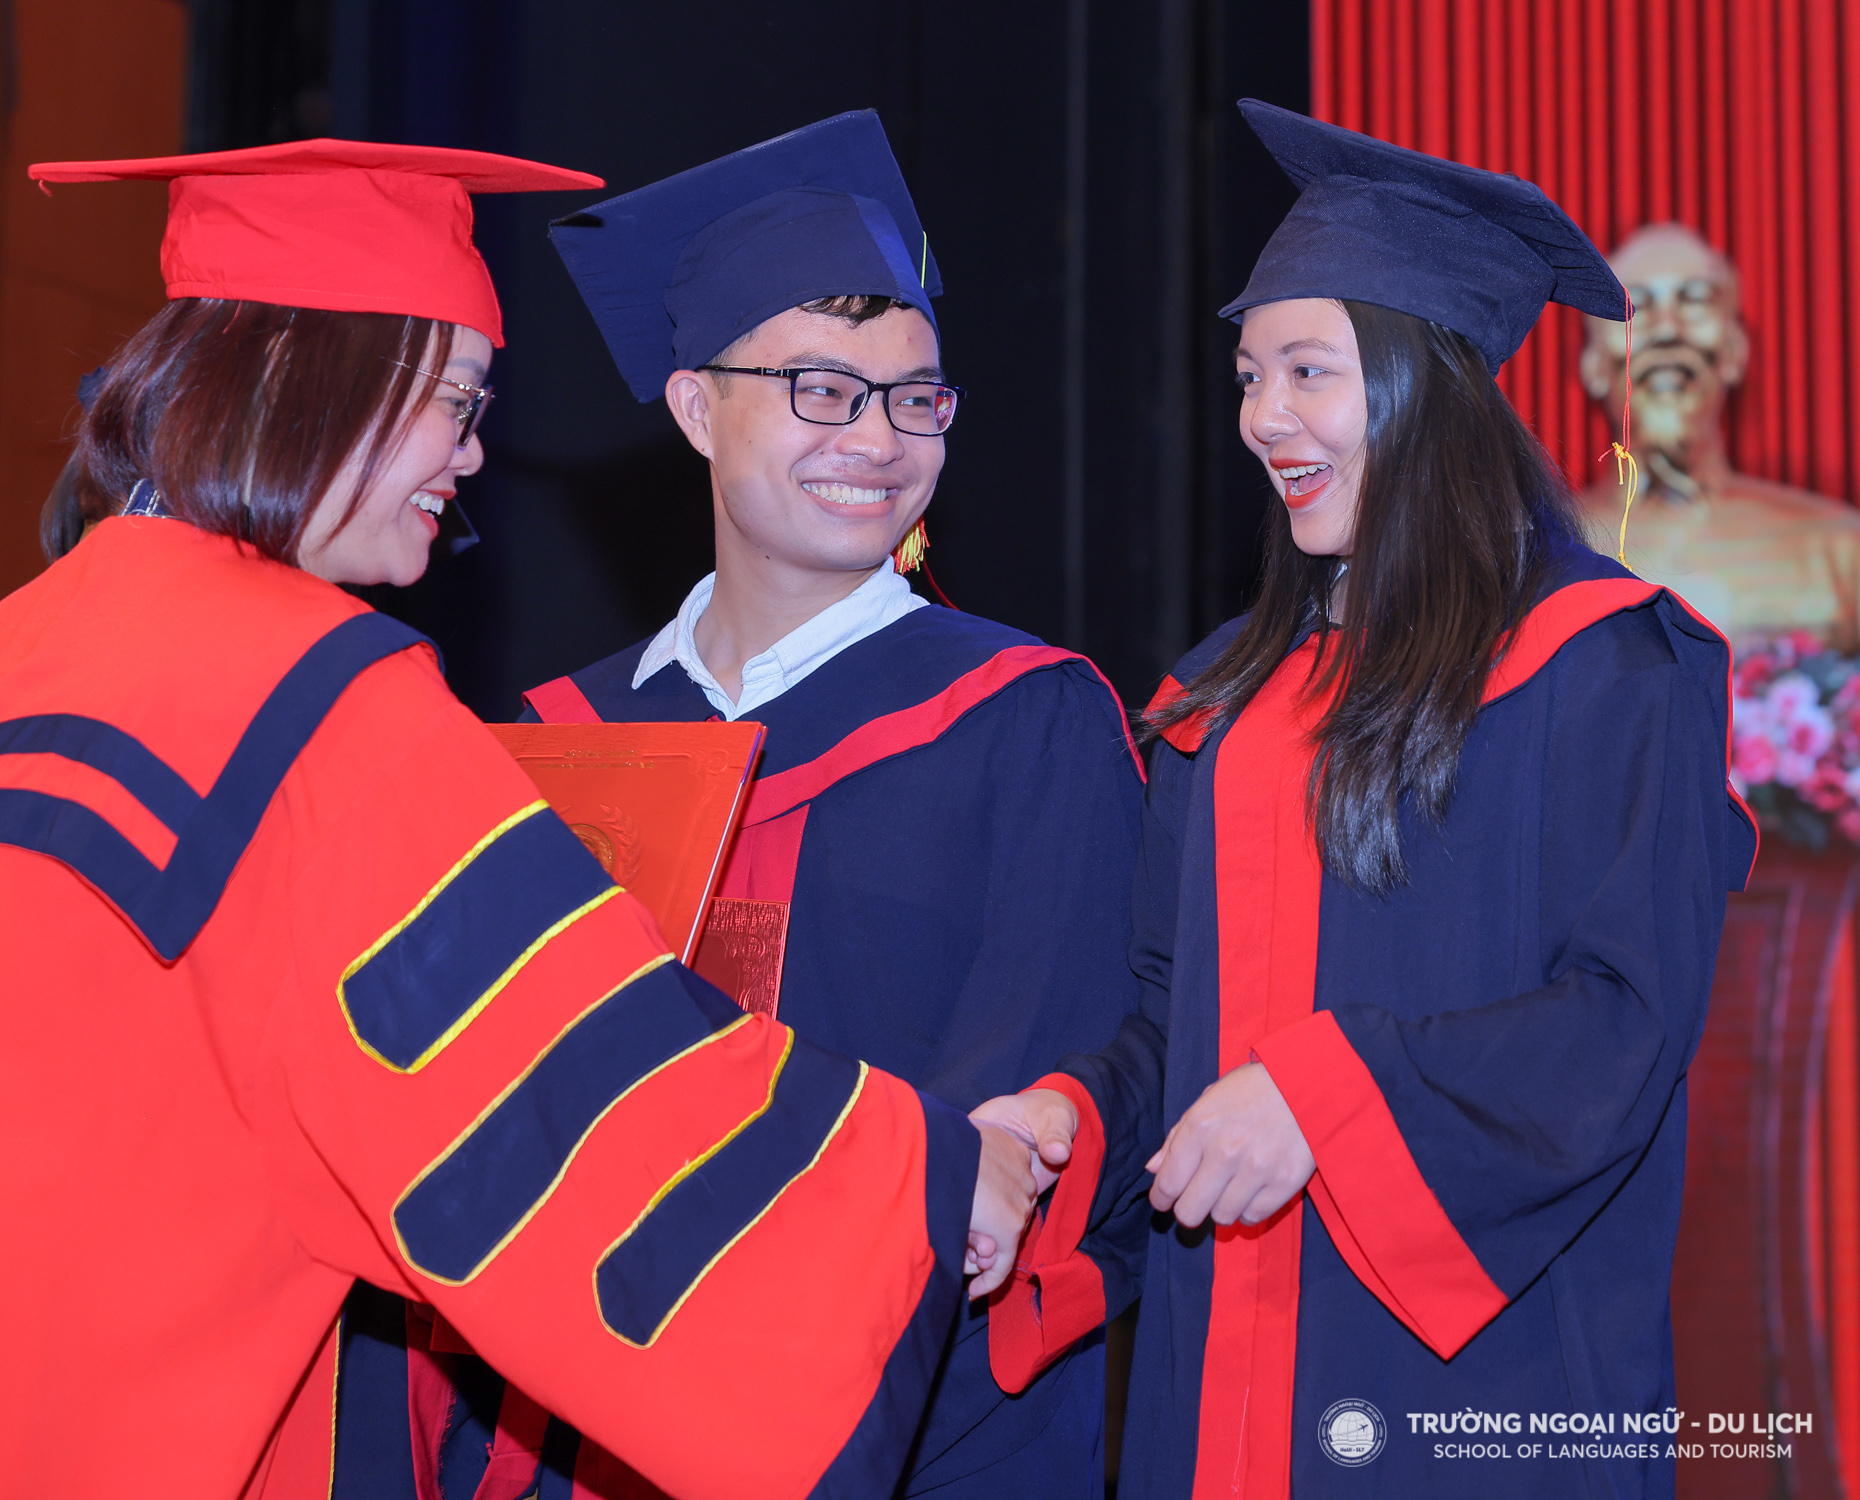 Tân cử nhân Trường Ngoại ngữ - Du lịch rạng rỡ trong buổi lễ tốt nghiệp đại học năm 2022